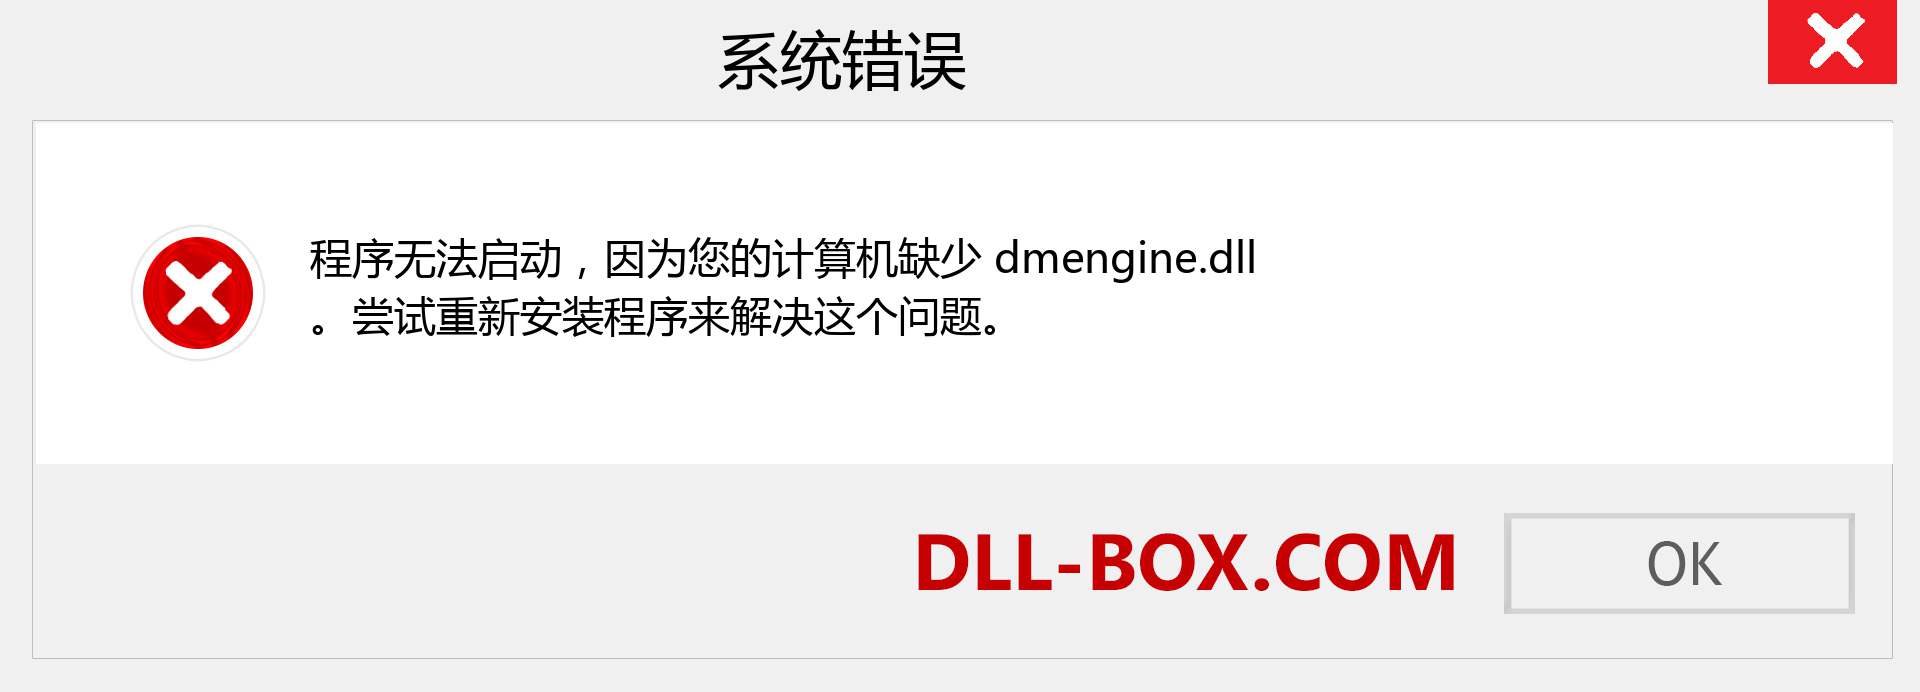 dmengine.dll 文件丢失？。 适用于 Windows 7、8、10 的下载 - 修复 Windows、照片、图像上的 dmengine dll 丢失错误